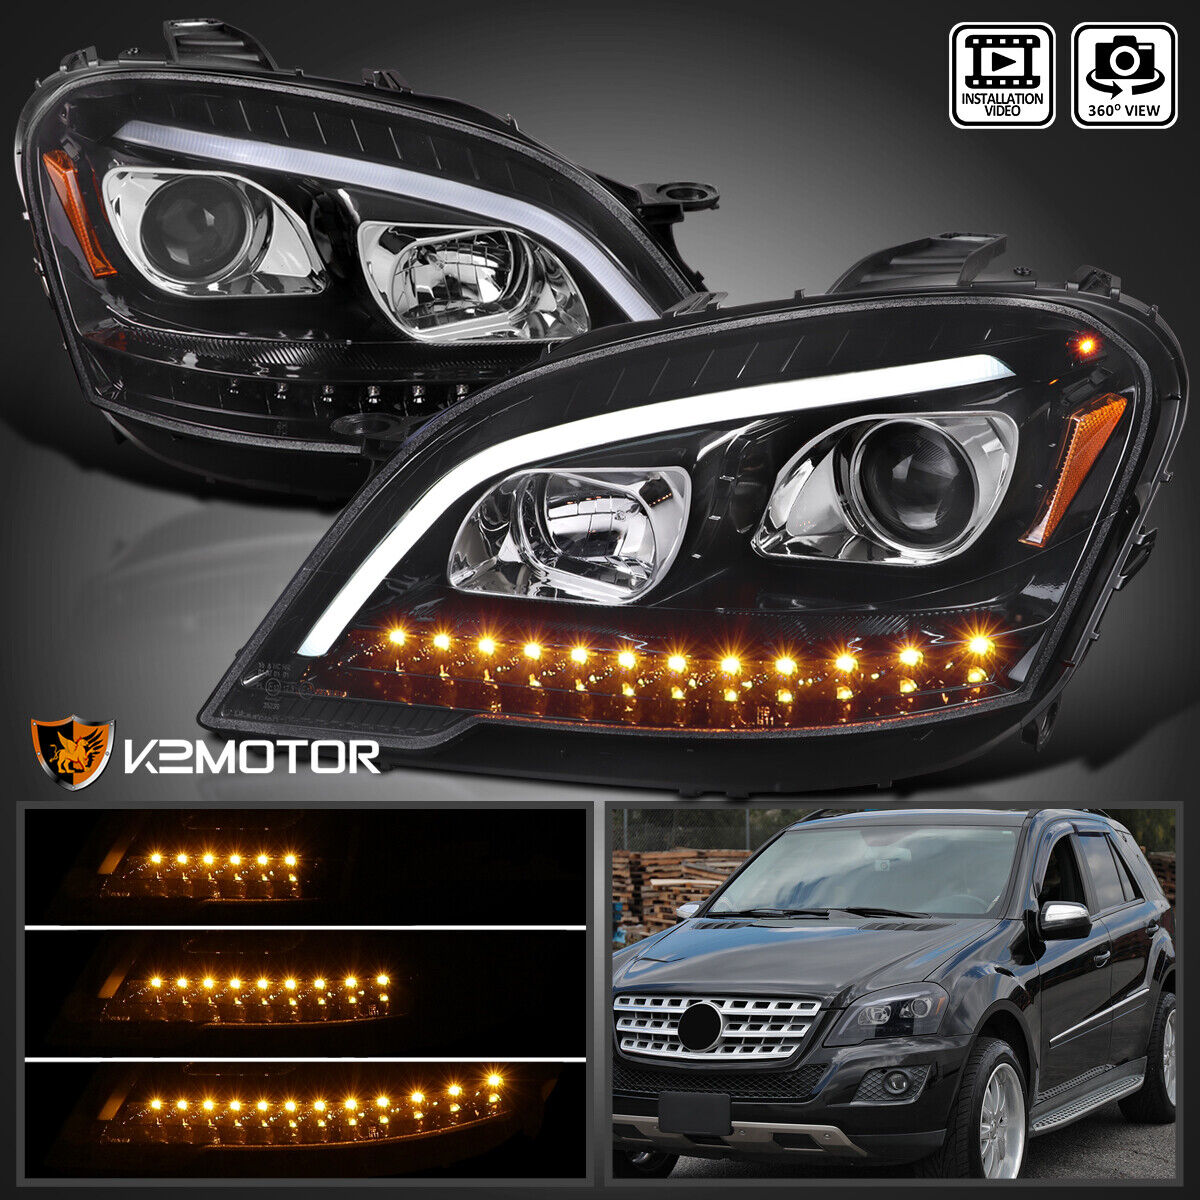 Jet Black Fits 2009-2011 Benz W164 ML320 LED Seq Signal Projector Headlights